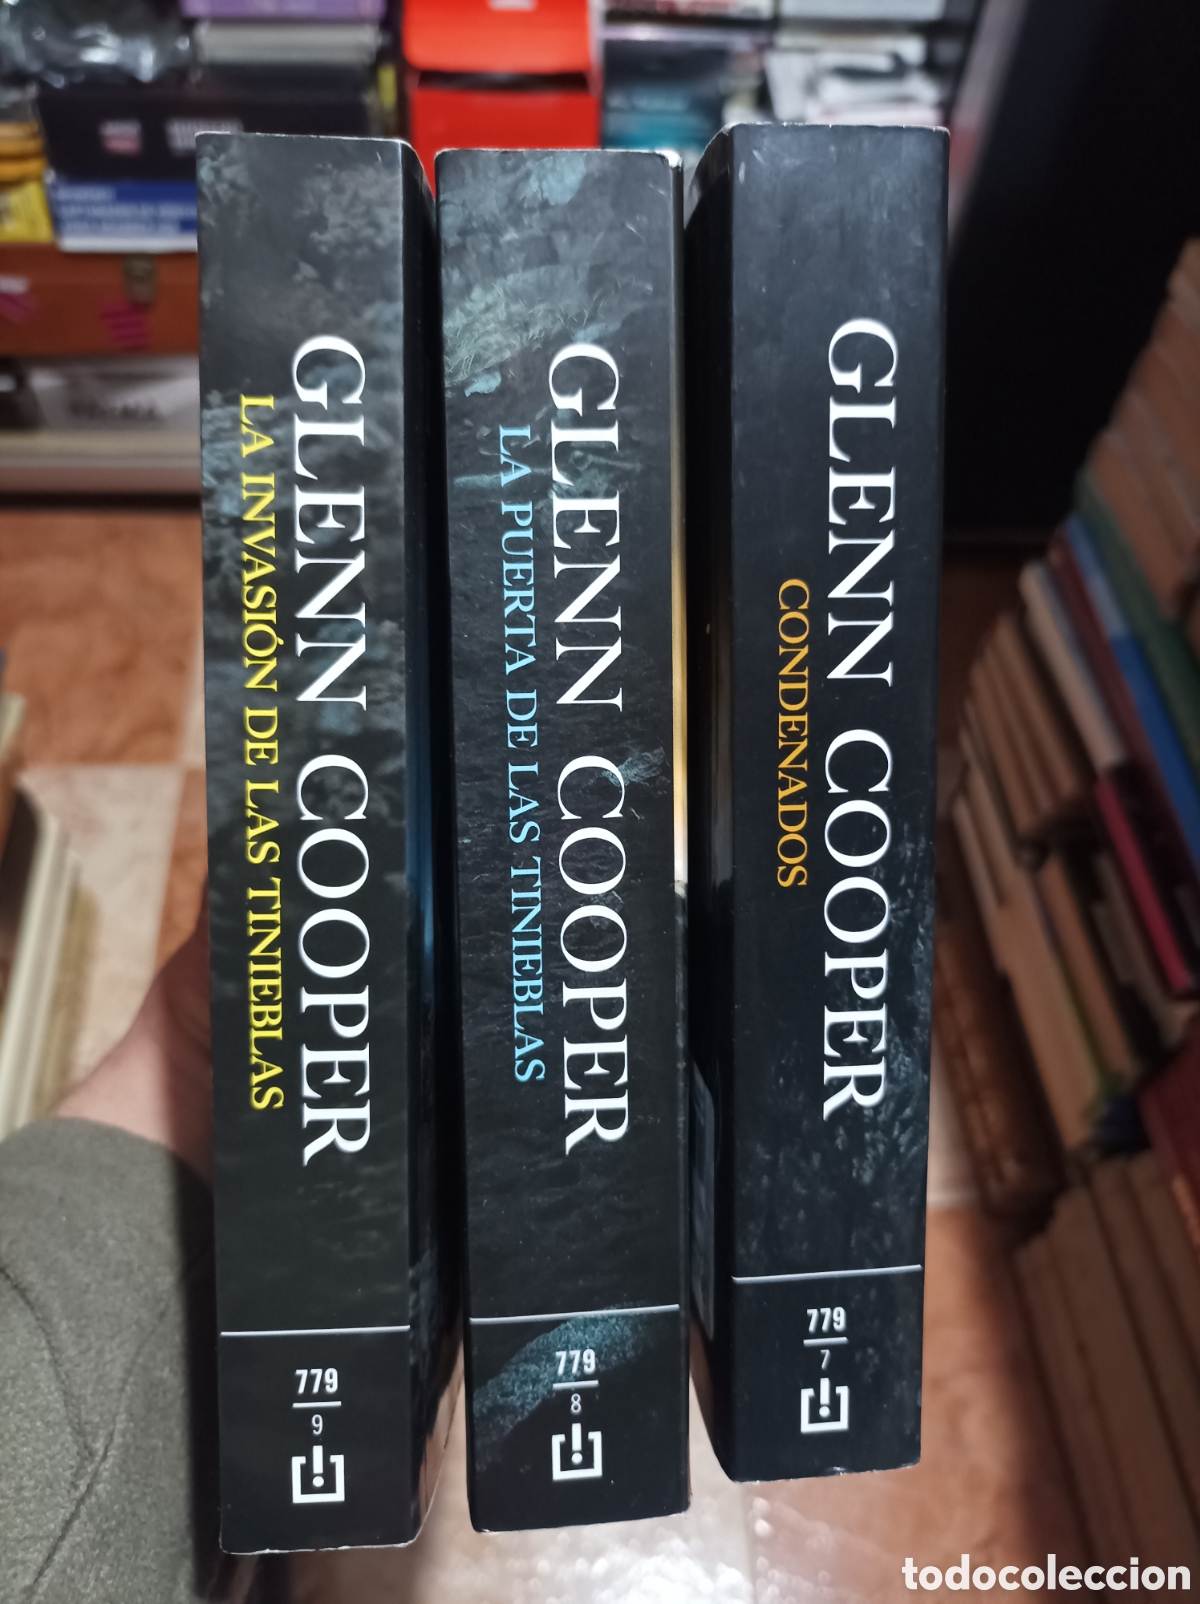 trilogia condenados ( 3 vol.). glenn cooper - Acquista Libri usati di  fantascienza e fantasia su todocoleccion